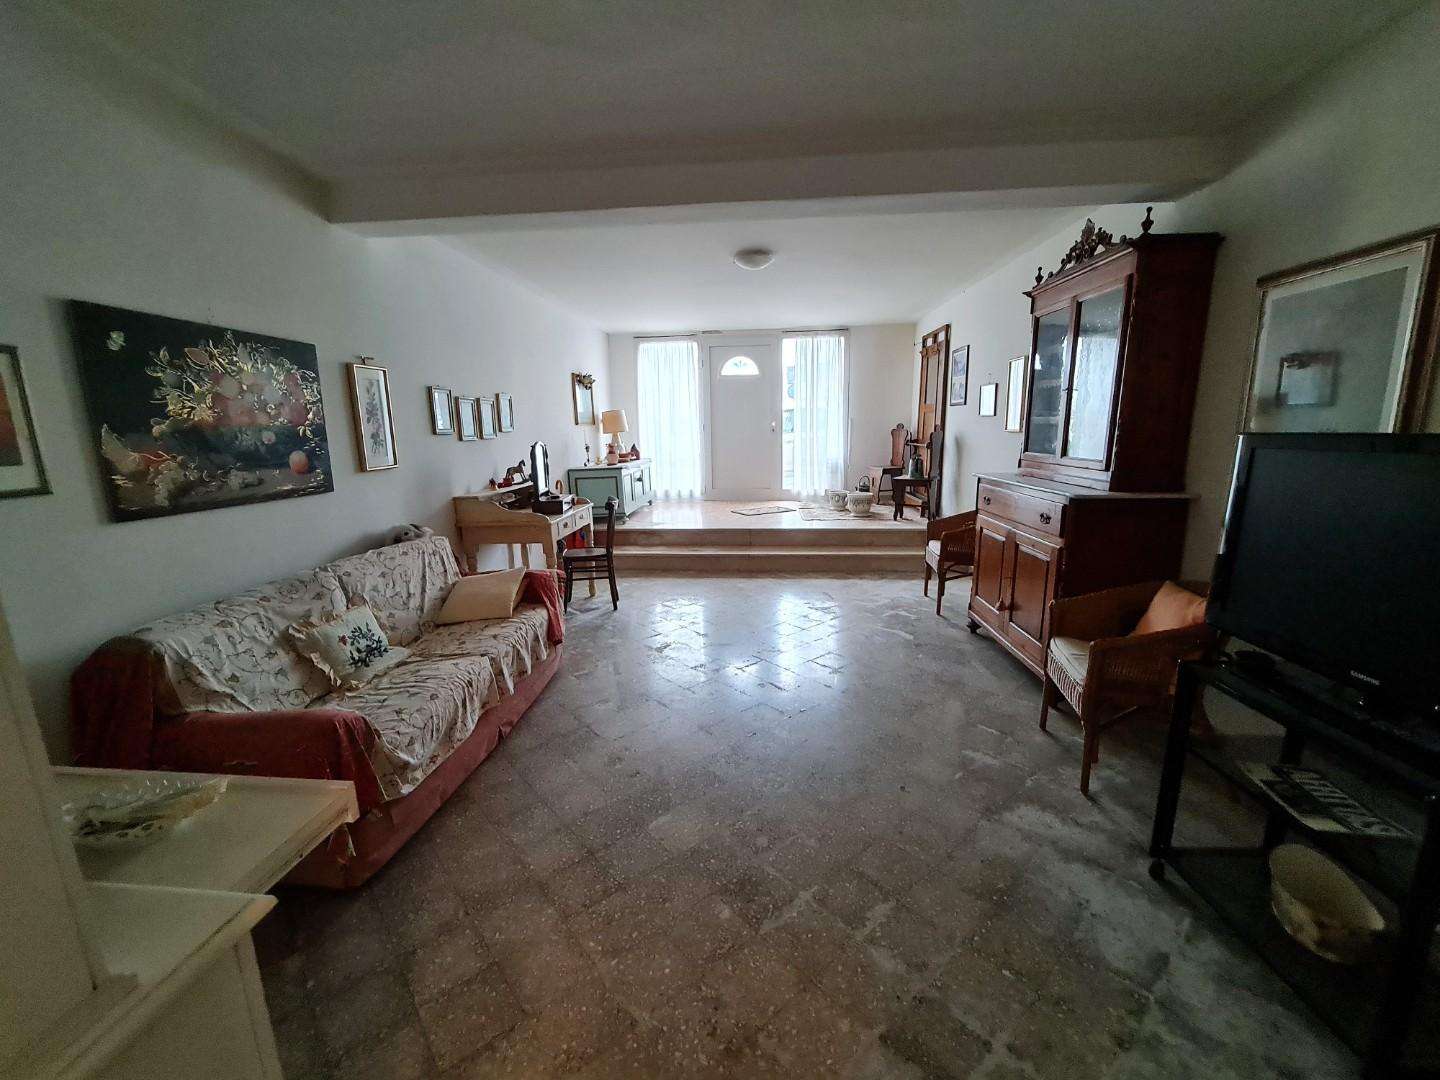 Palazzo - Stabile in Vendita a San Miniato Via Tosco Romagnola Est,